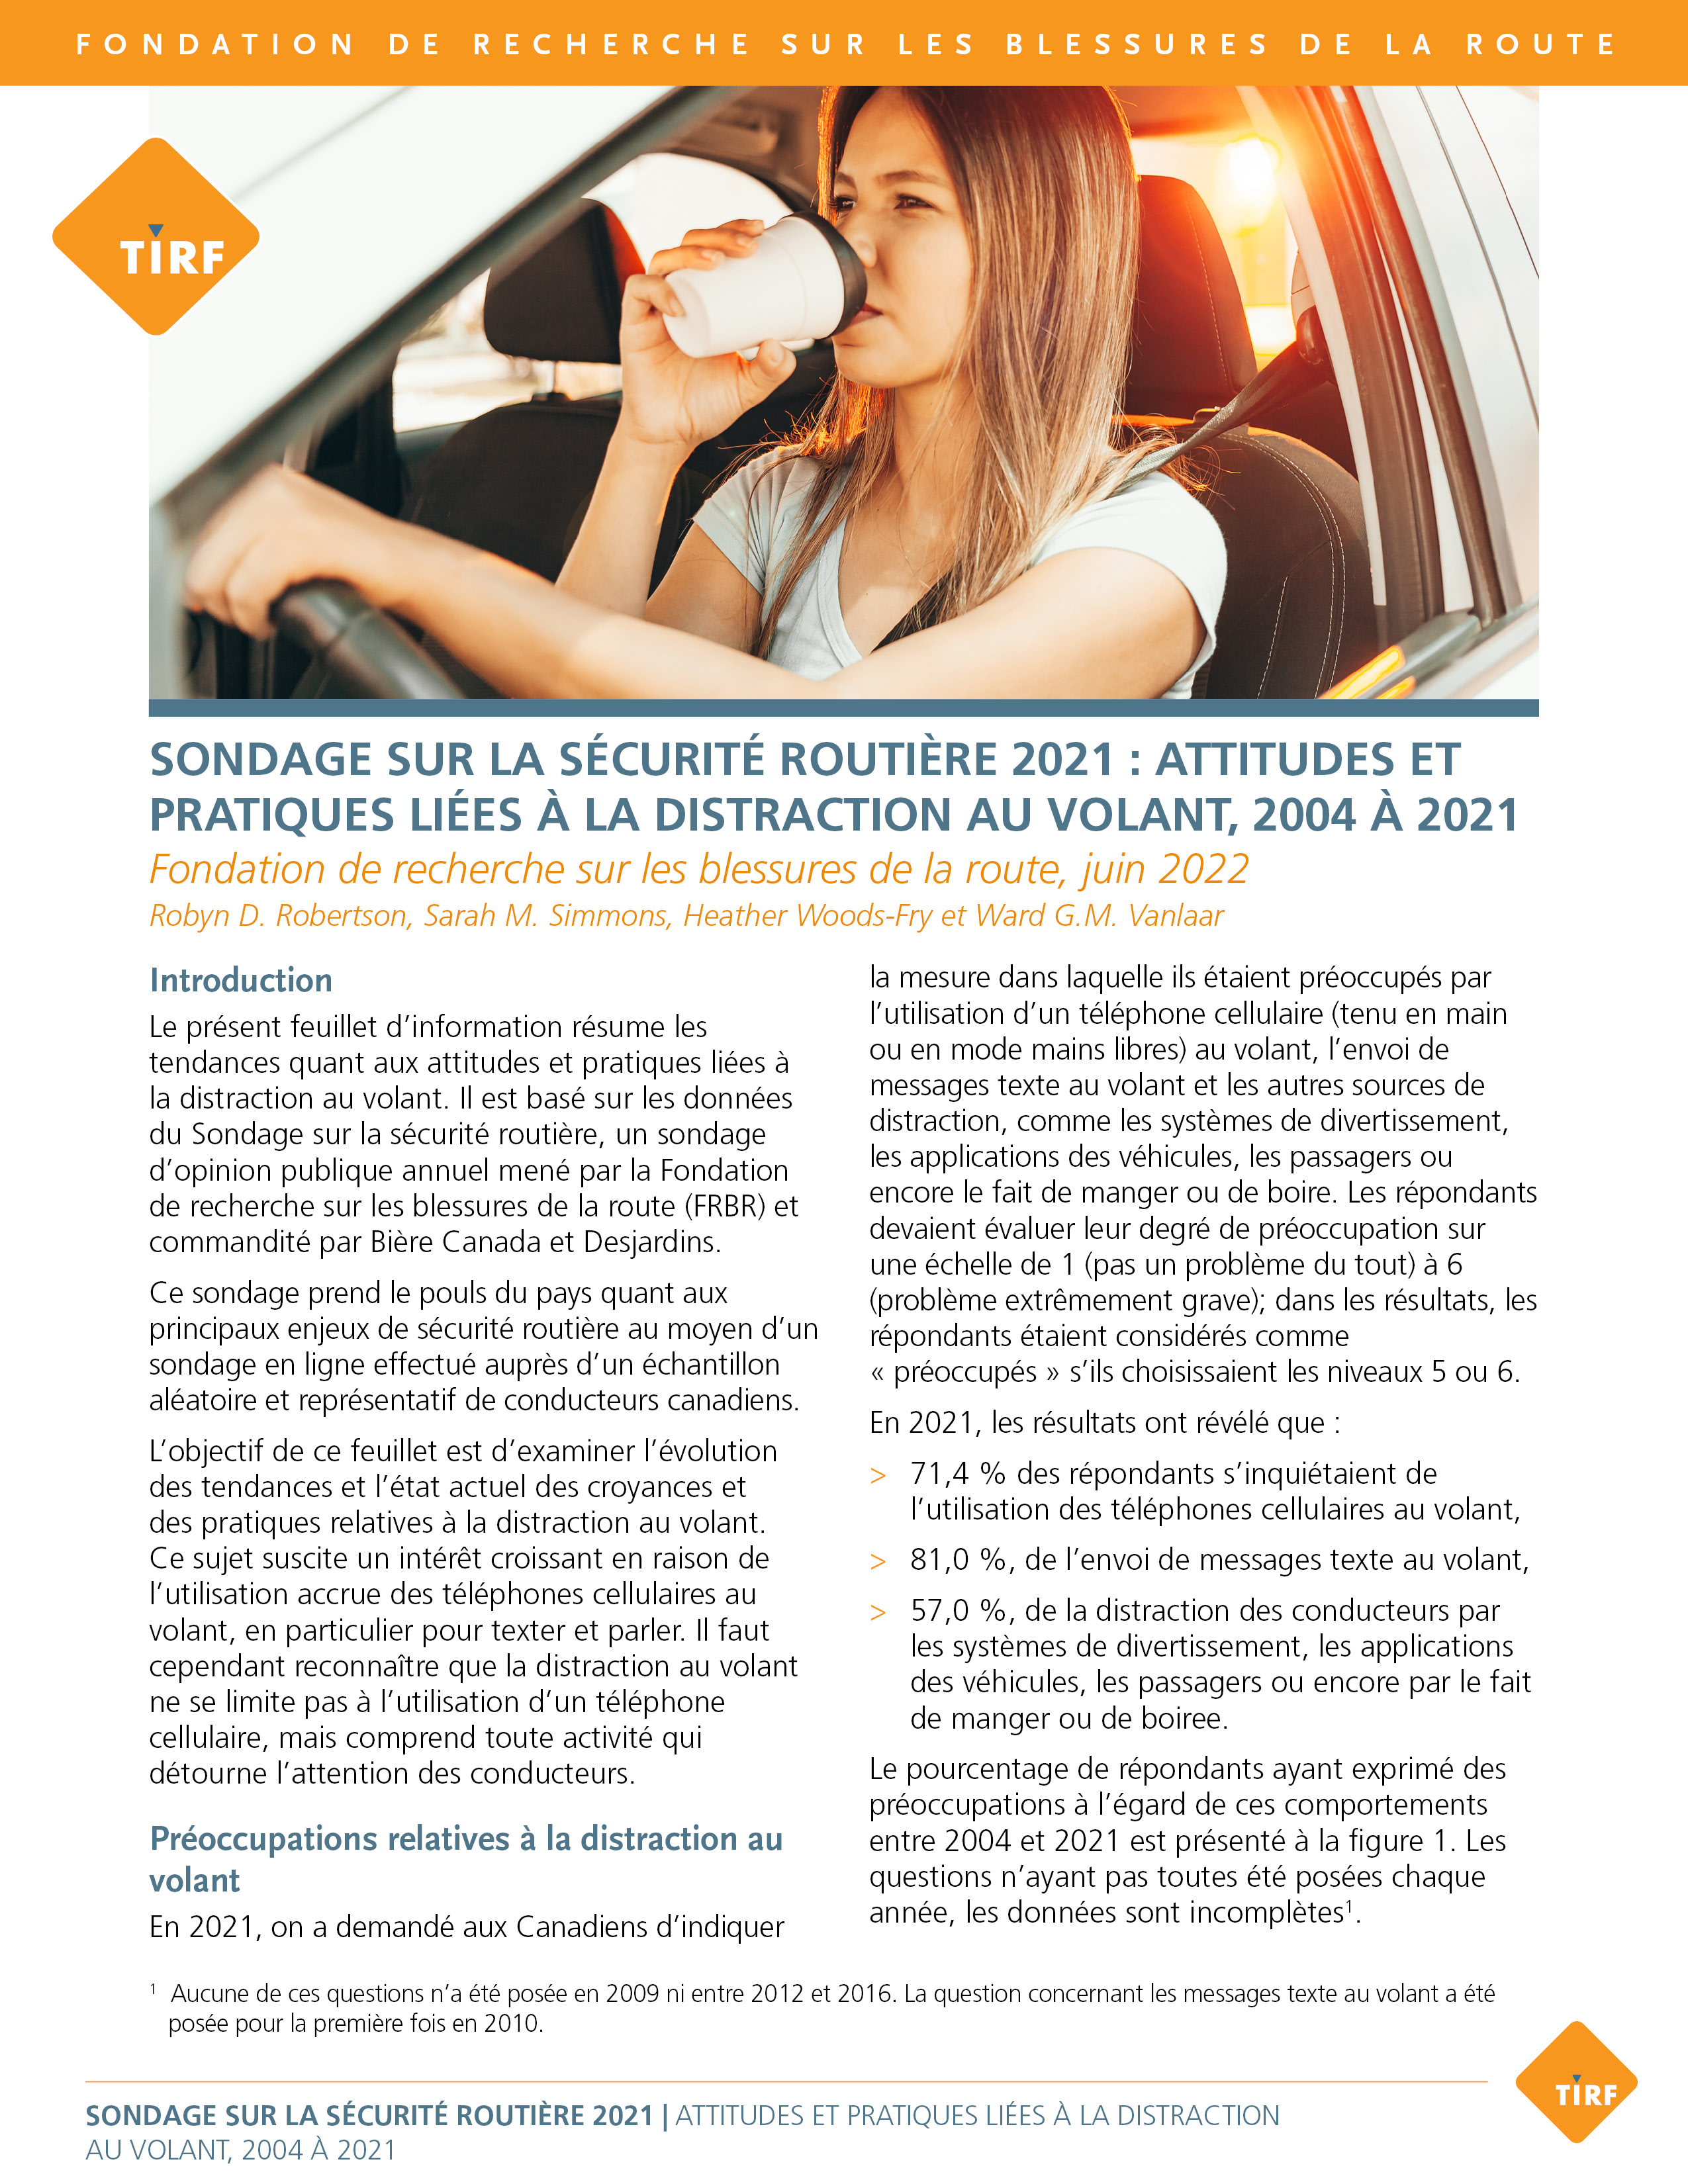 Sondage sur la sécurité routière 2021 : Attitudes et pratiques liées à la distraction au volant, 2004 à 2021